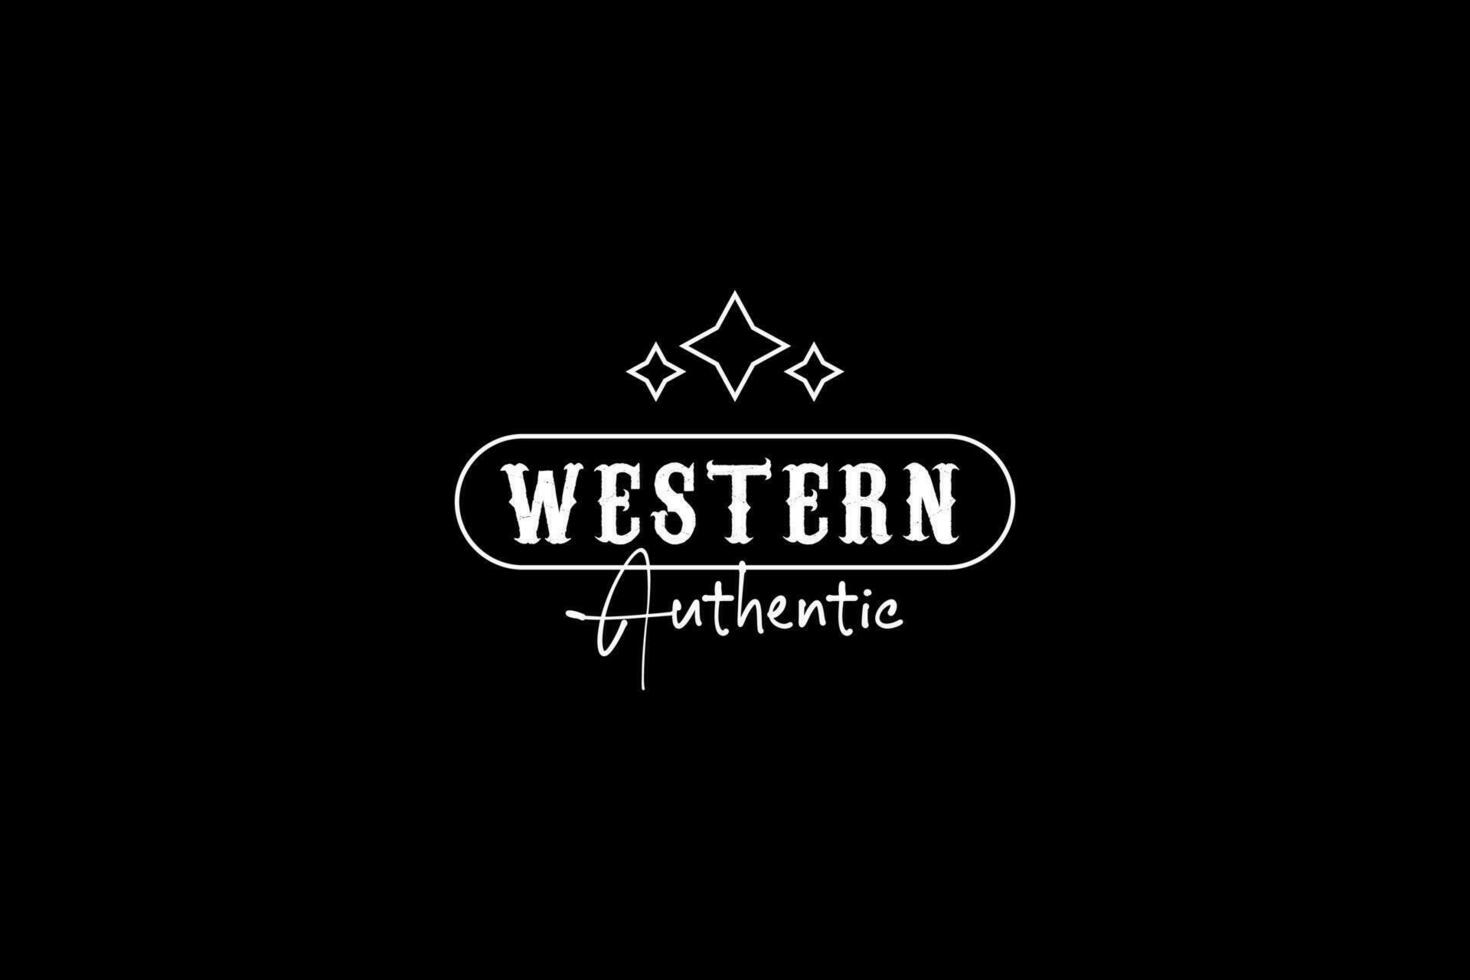 typographie d'emblème de pays vintage pour l'inspiration de conception de logo de restaurant de bar occidental vecteur